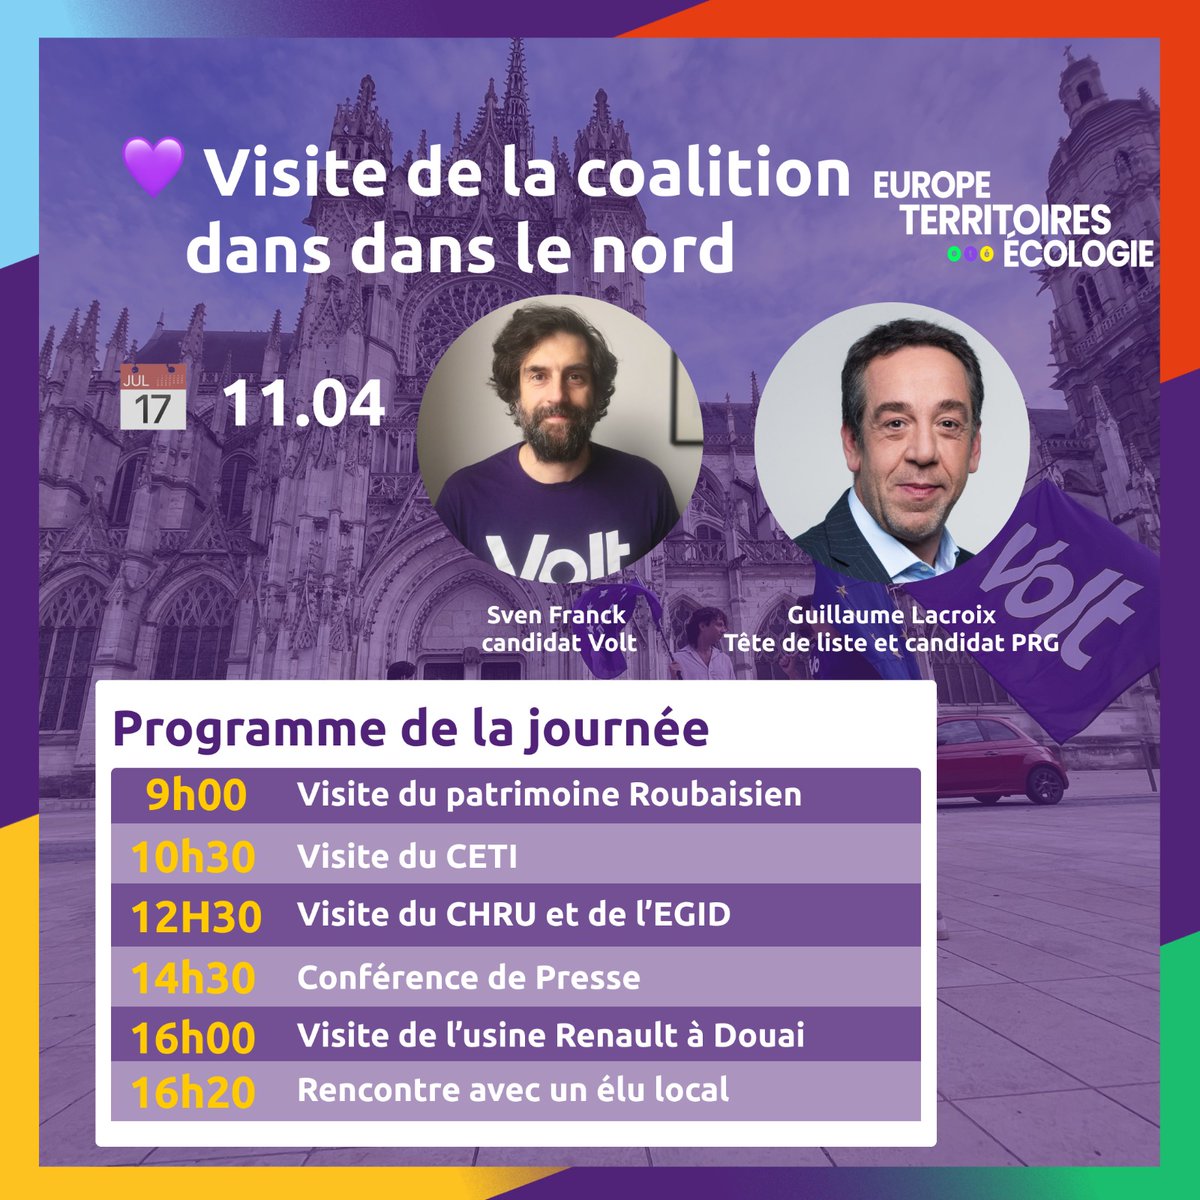 C'est demain, la visite de @Lacroix_PRG à #Lille, #Roubaix, #Tourcoing et #Douai pour parler de la vision pour les territoires de demain au sein de l'#Europe. Notre coalition @ETE_2024 sera au rendez-vous le 9 juin aux #electionseuropeennes2024 🇪🇺